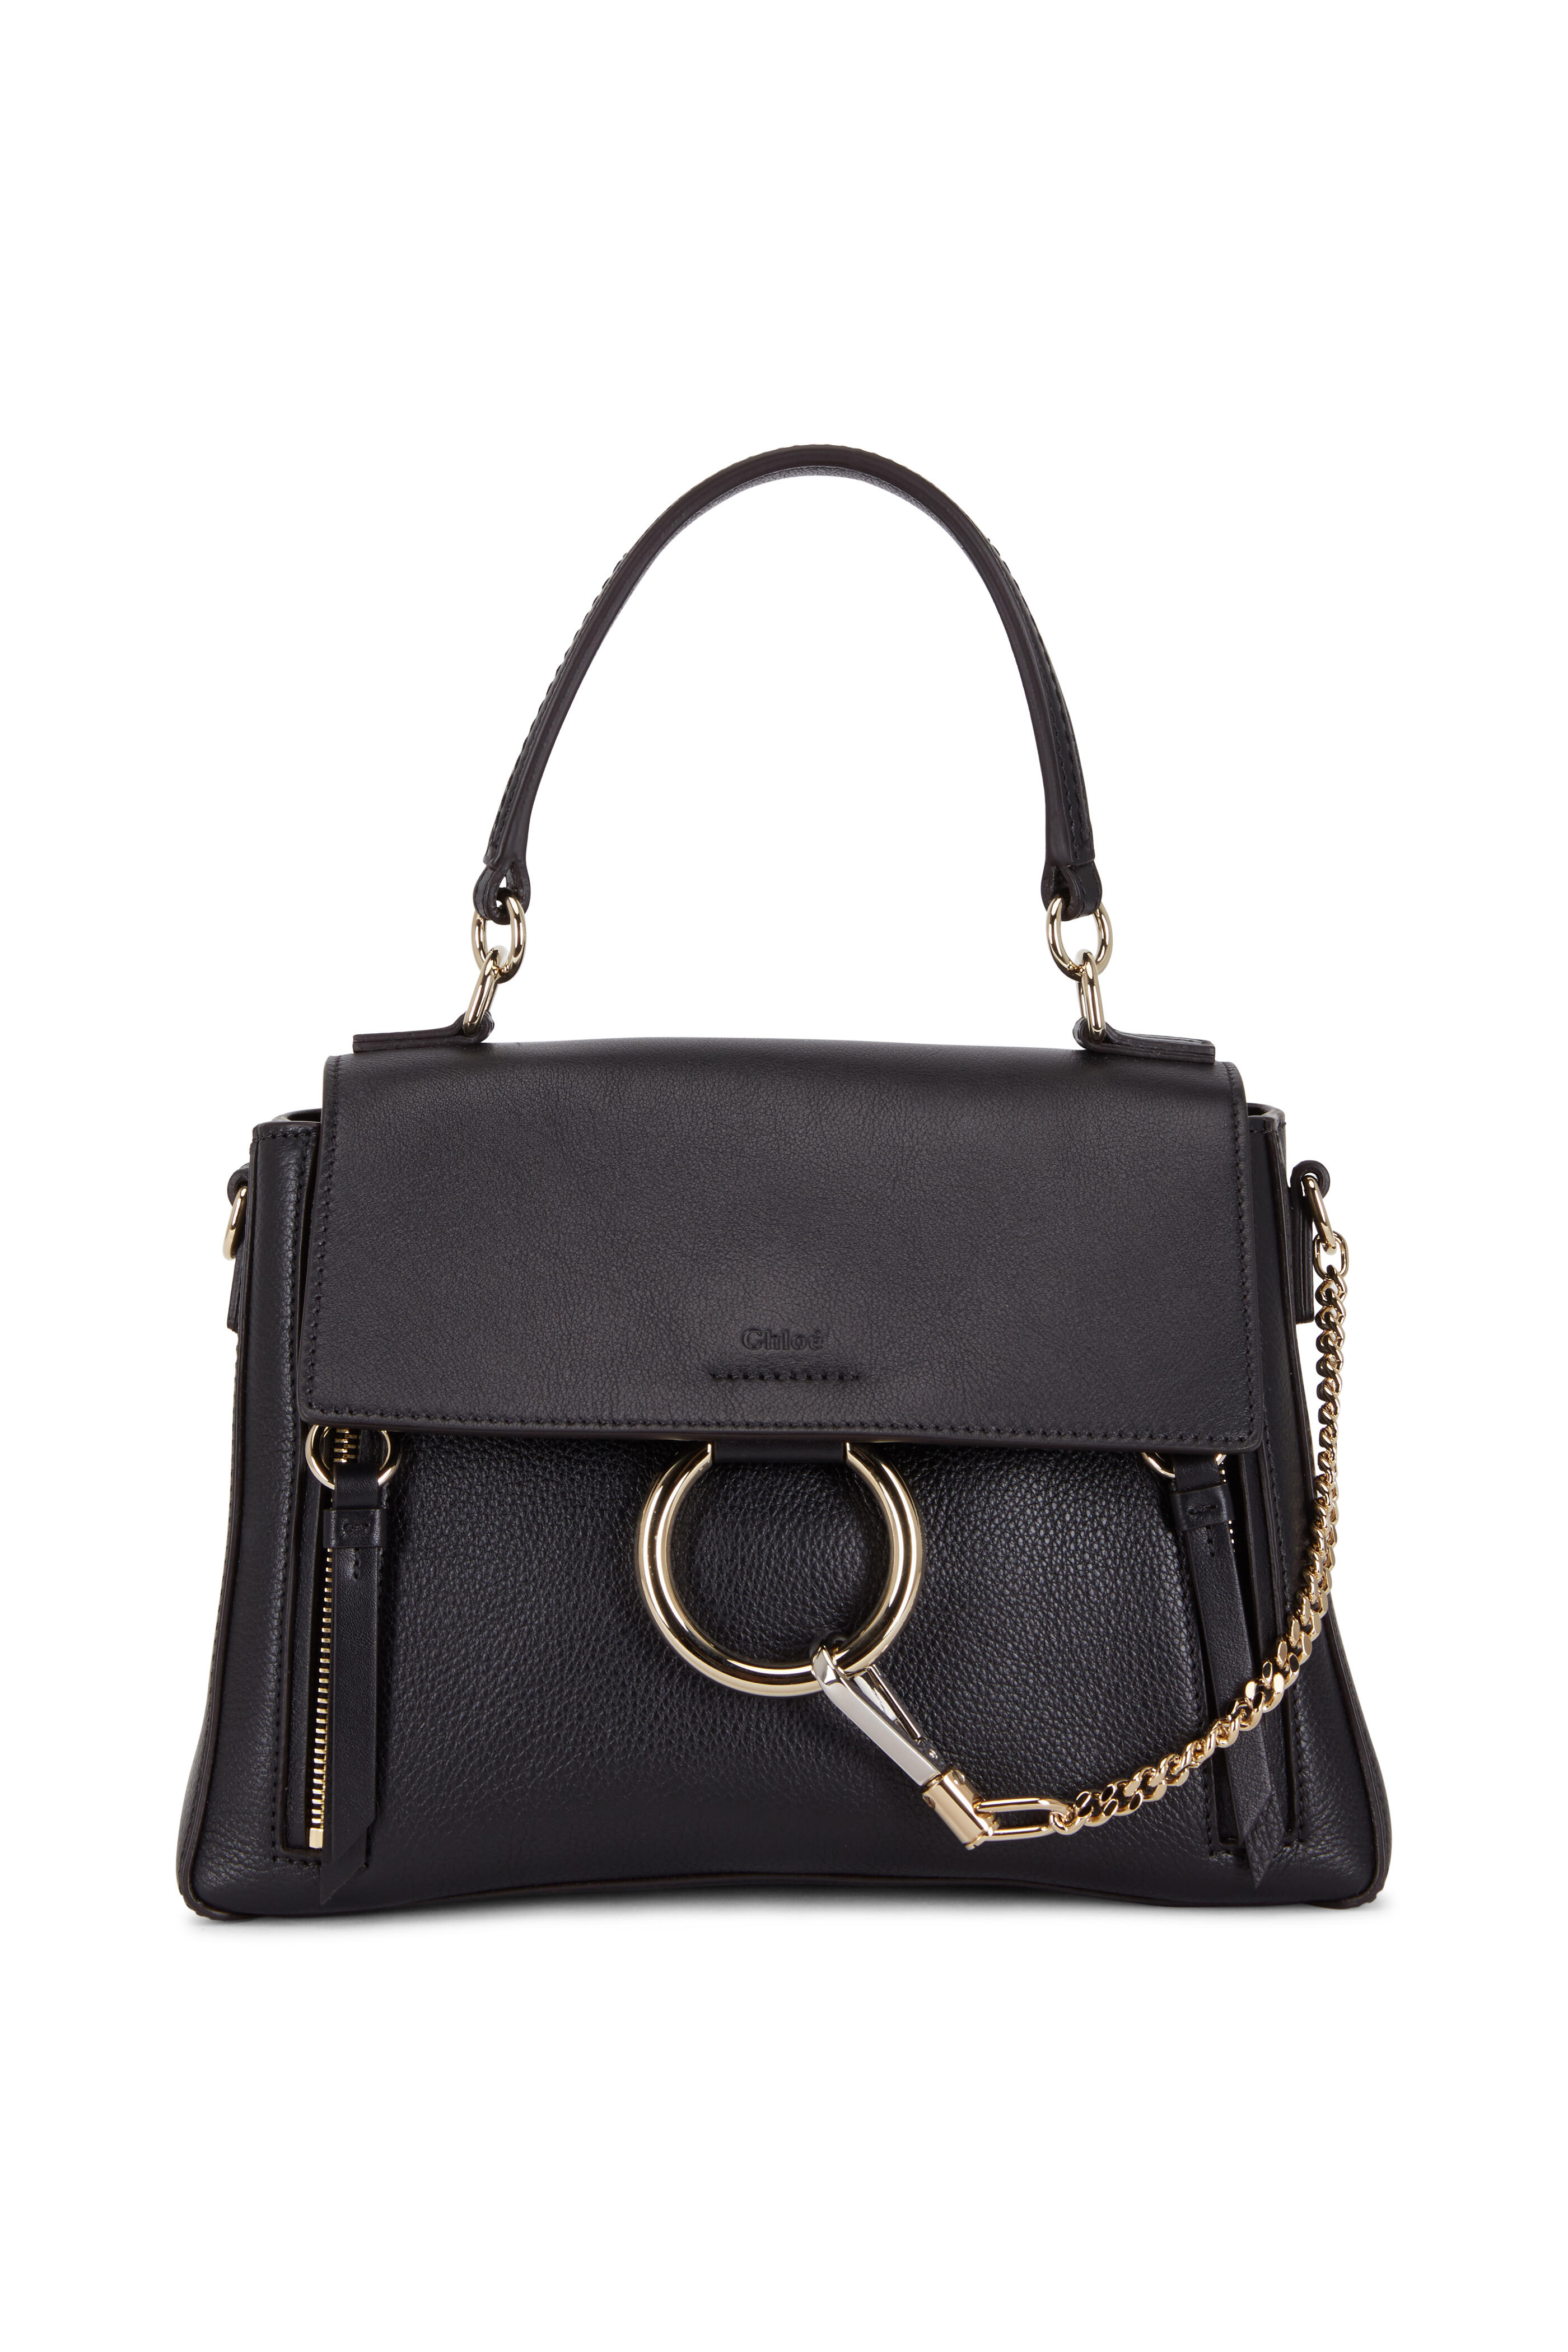 Chloé - Faye Black Leather Shoulder Bag